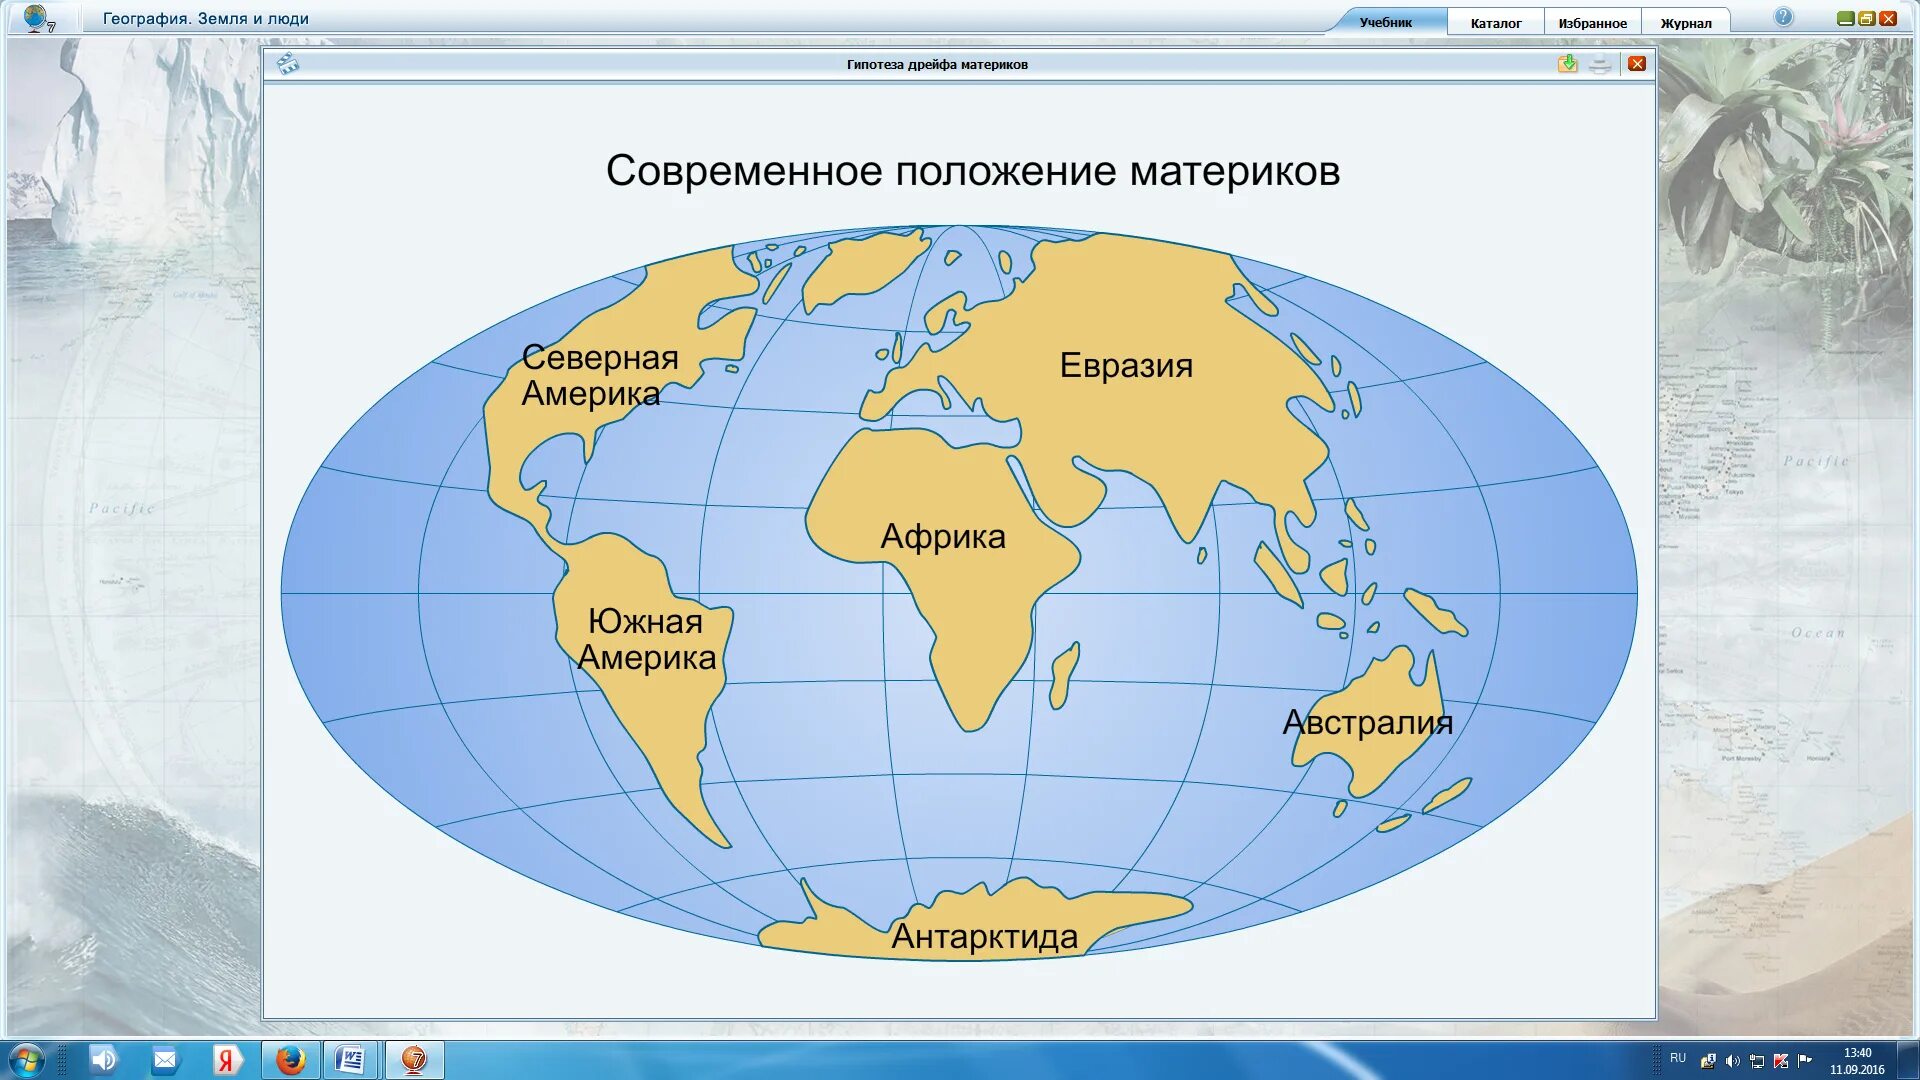 Материки земного шара на карте с названиями. Материки на карте с названиями. Название материков.